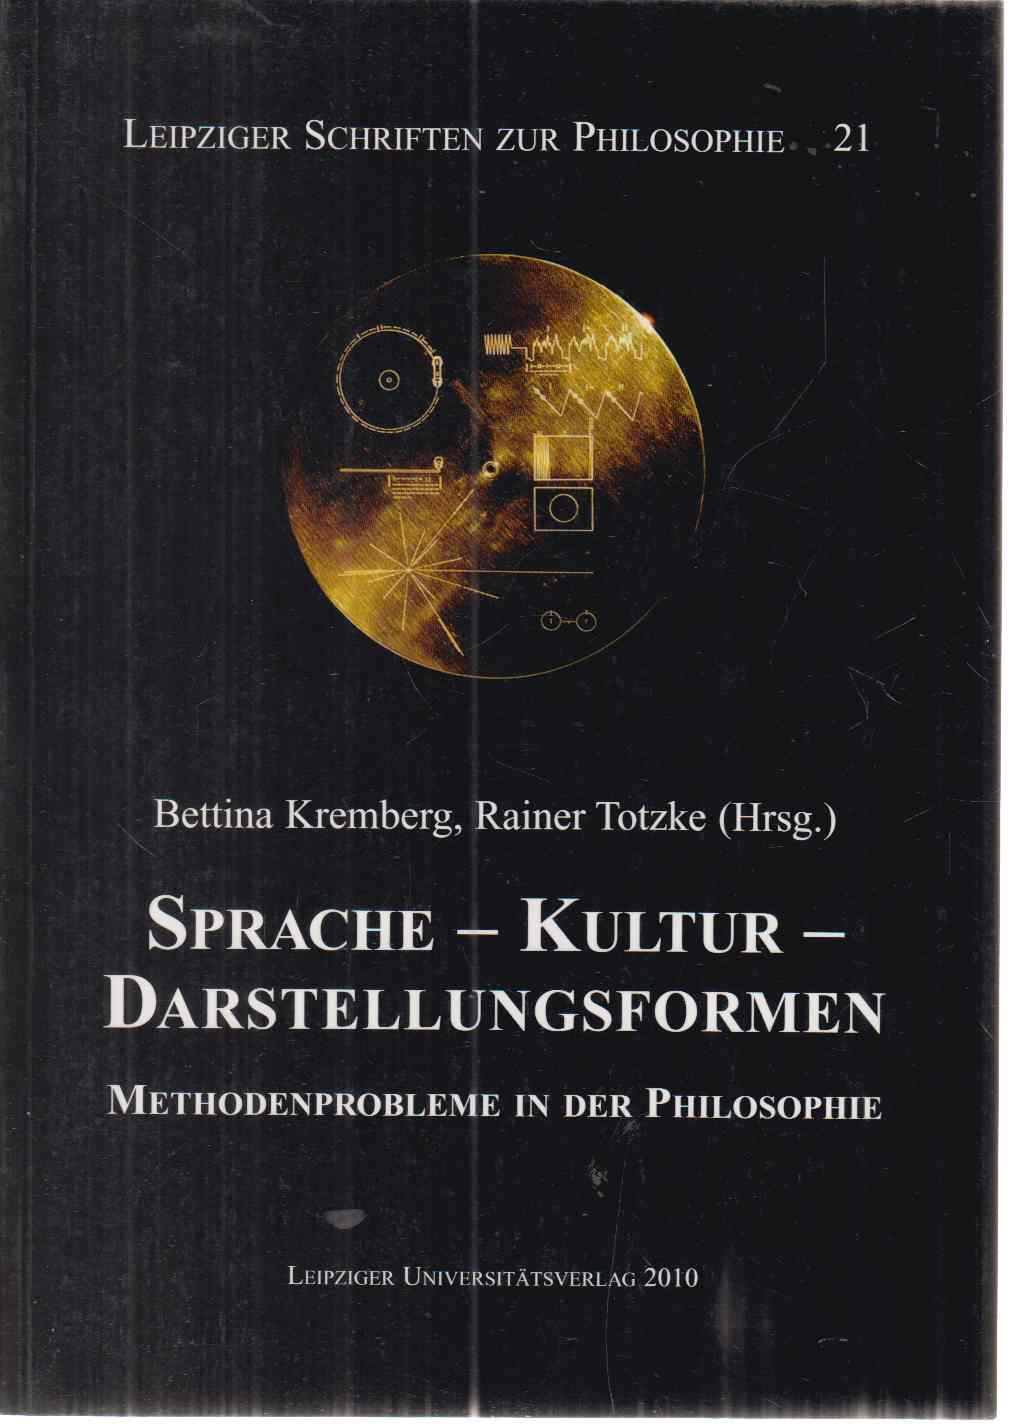 Sprache - Kultur - Darstellungsformen Methodenprobleme in der Philosophie. Leipziger Schriften zur Philosophie Bd. 21. - Kremberg, Bettina und Rainer Totzke (Hrsg.)